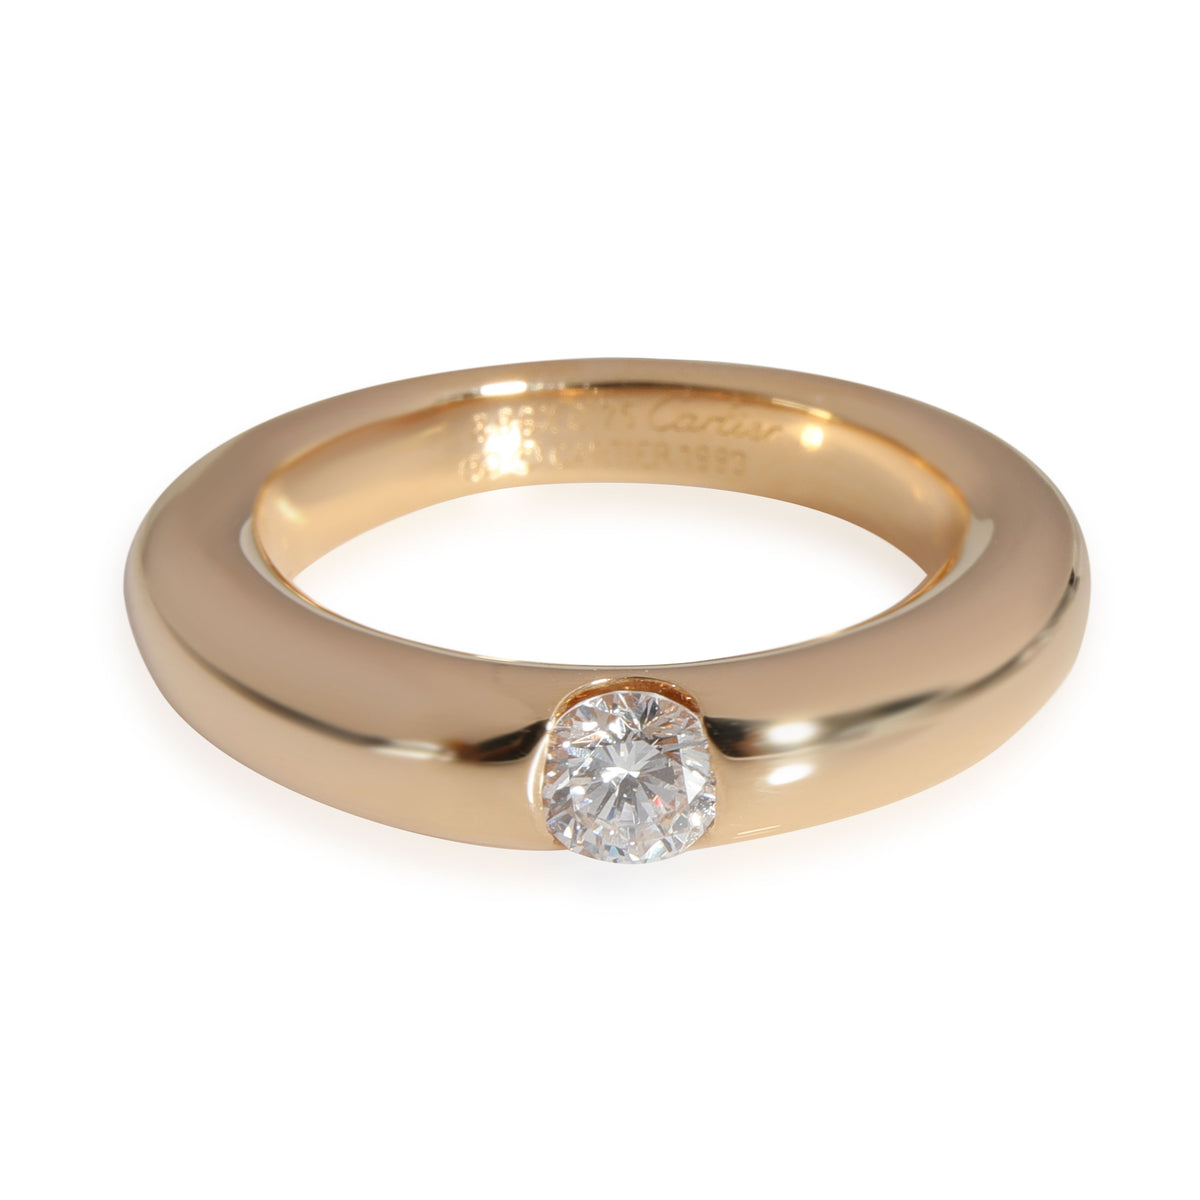 Cartier Ellipse Diamond Ring in 18K Yellow Gold E-F VS1 0.25 CTW